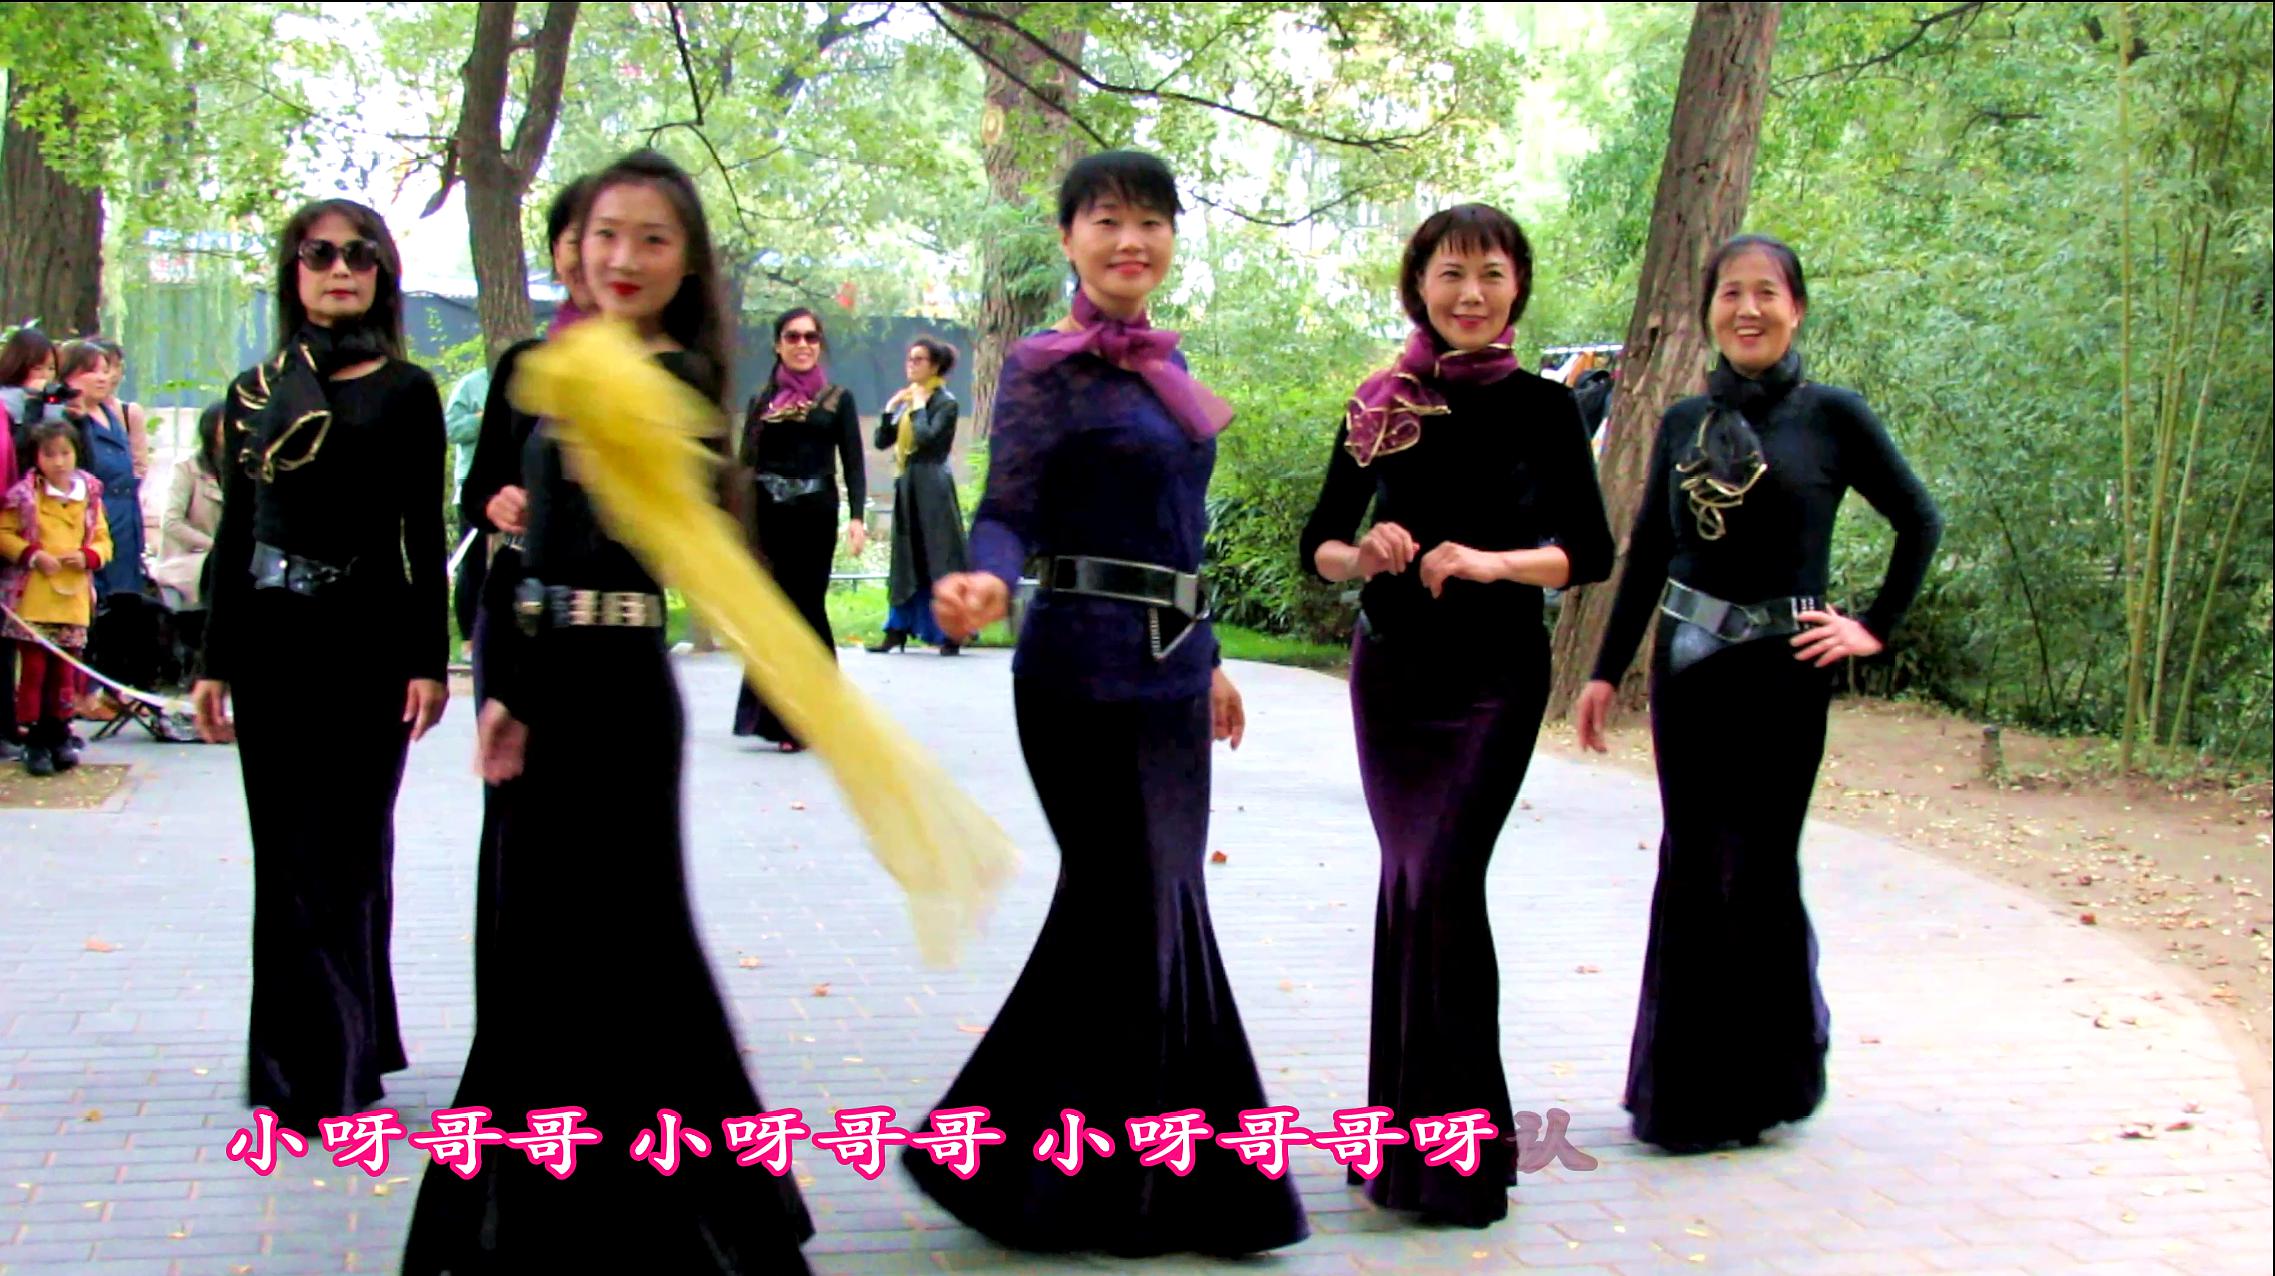 紫竹院广场舞《水仙花开》,鱼尾裙更彰显曼妙的身材